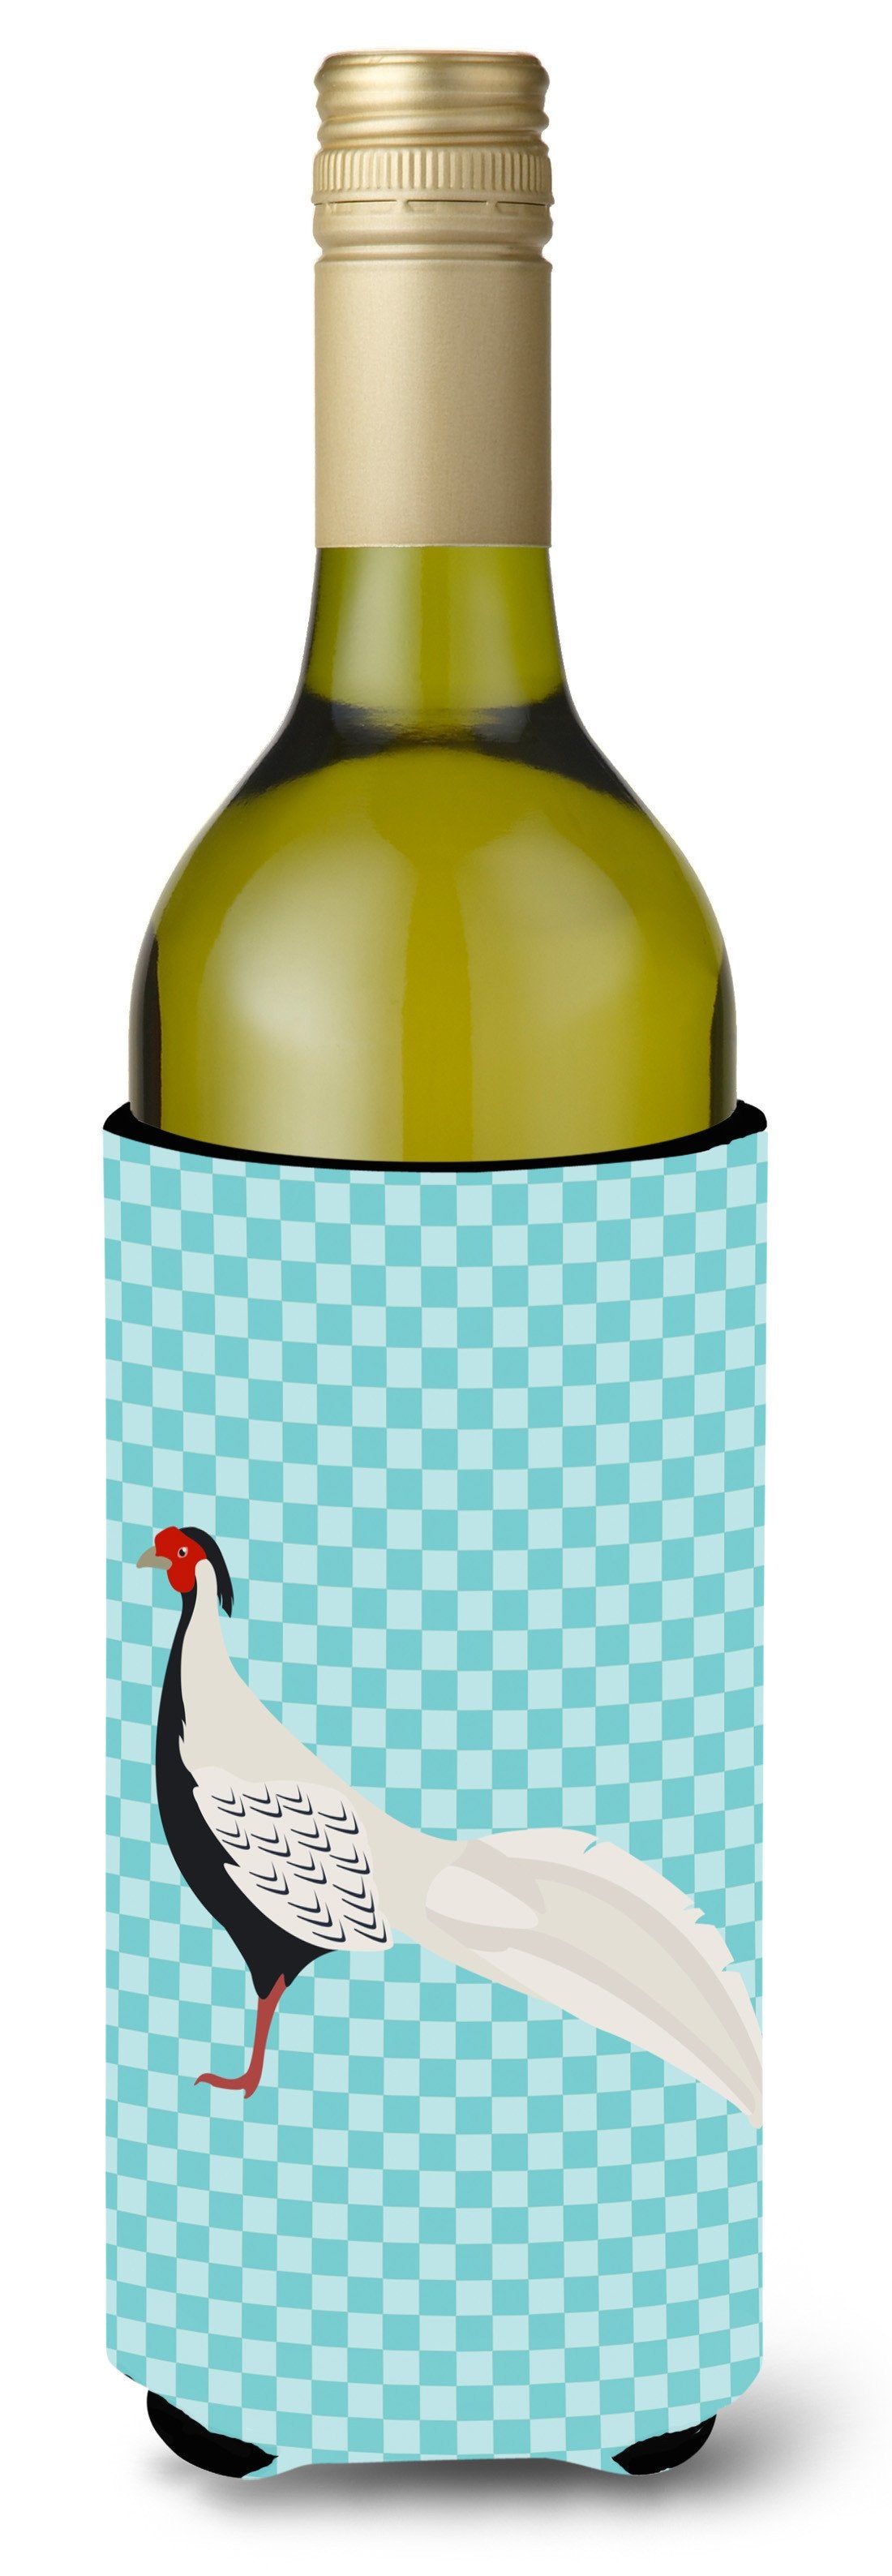 Silver Pheasant Blue Check Wine Bottle Beverge Insulator Hugger BB8103LITERK by Caroline's Treasures